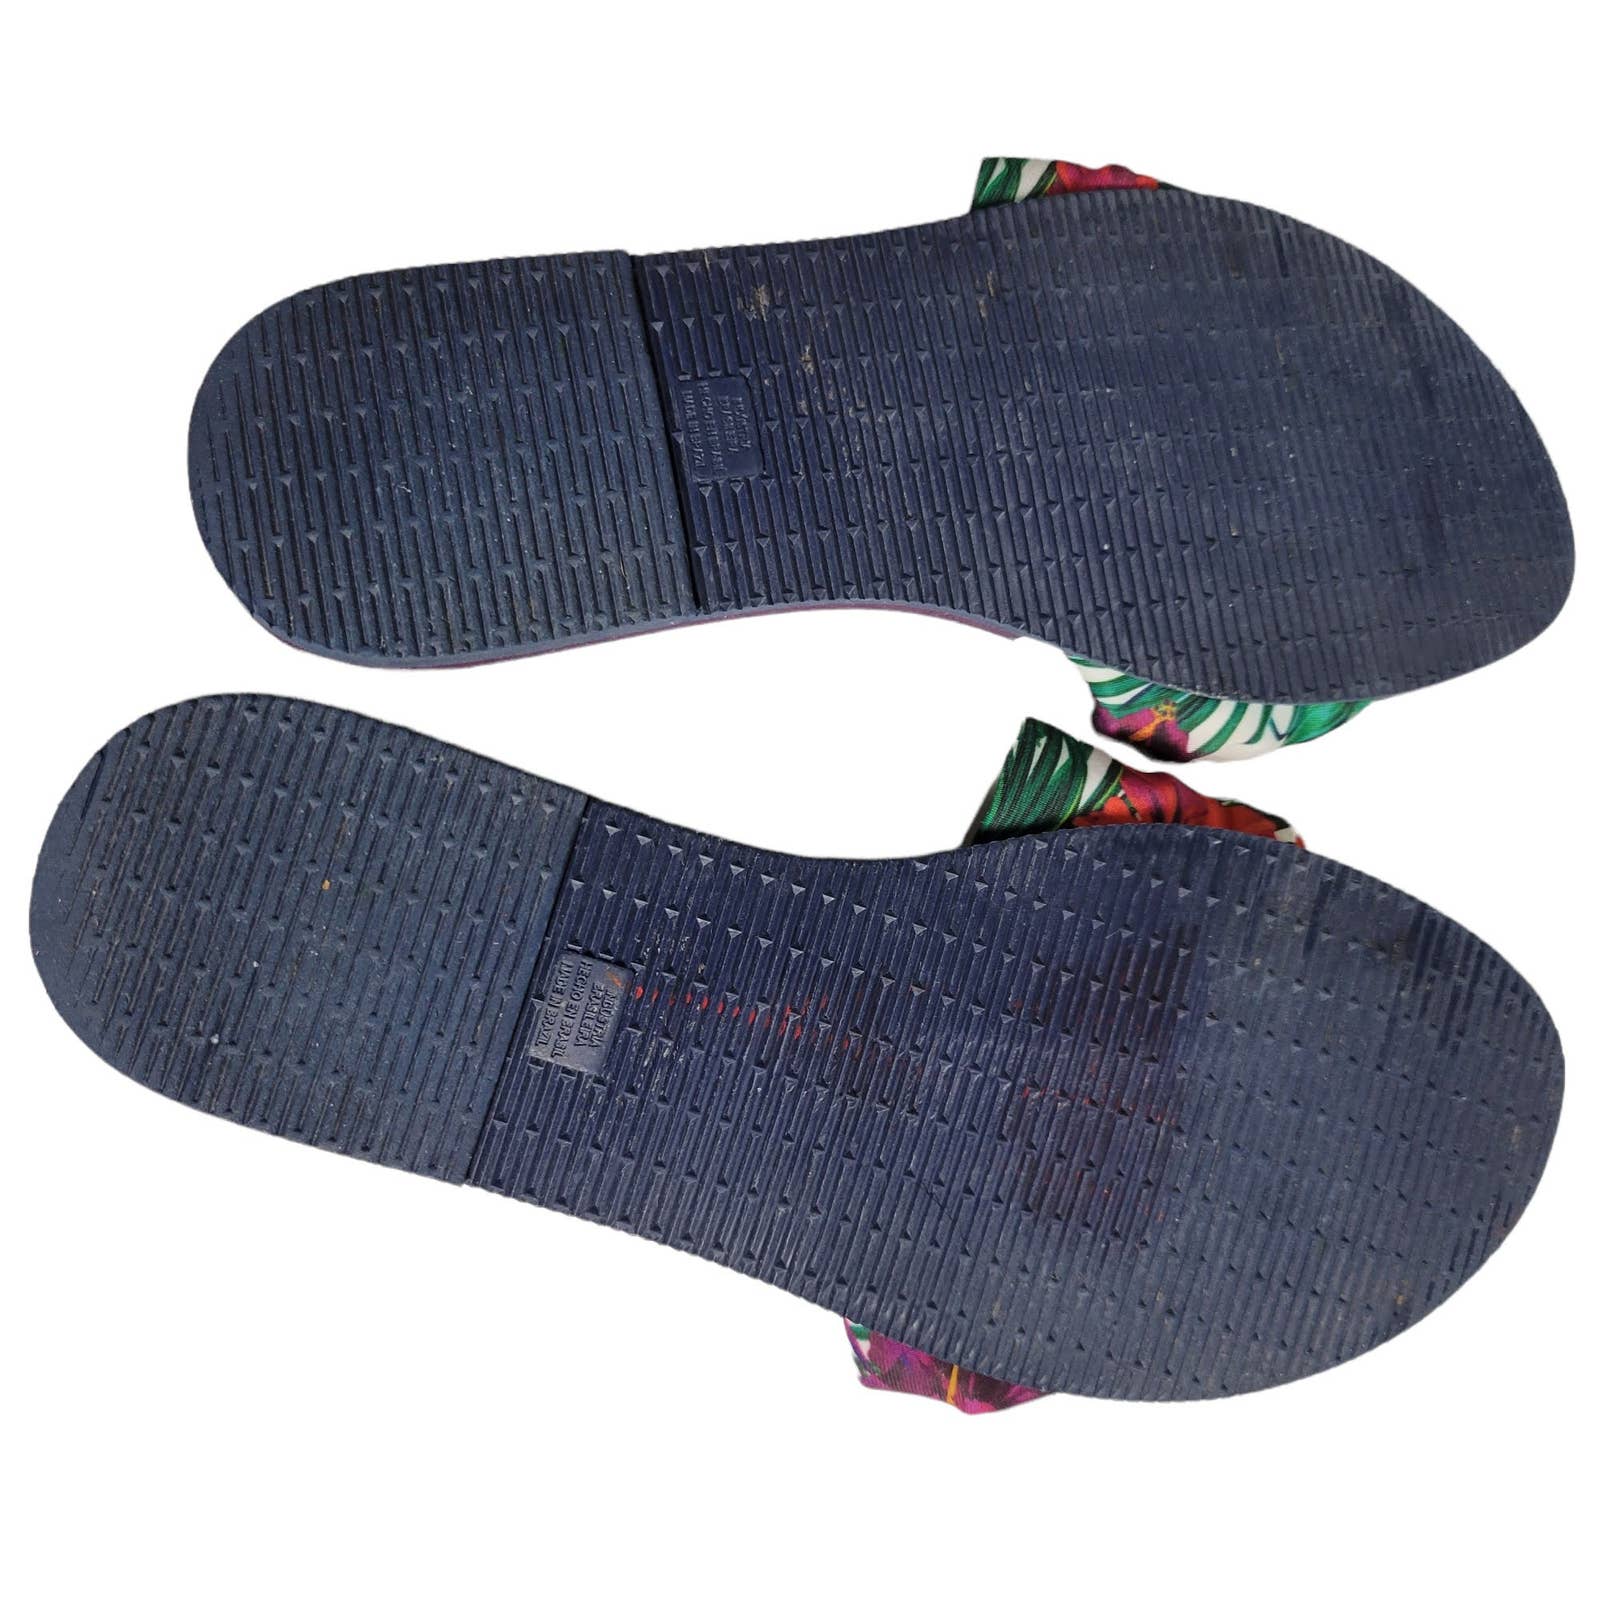 Havaianas You Saint Tropez Thong Sandals Floral Fabric Flip Flops Flats Size 7 8